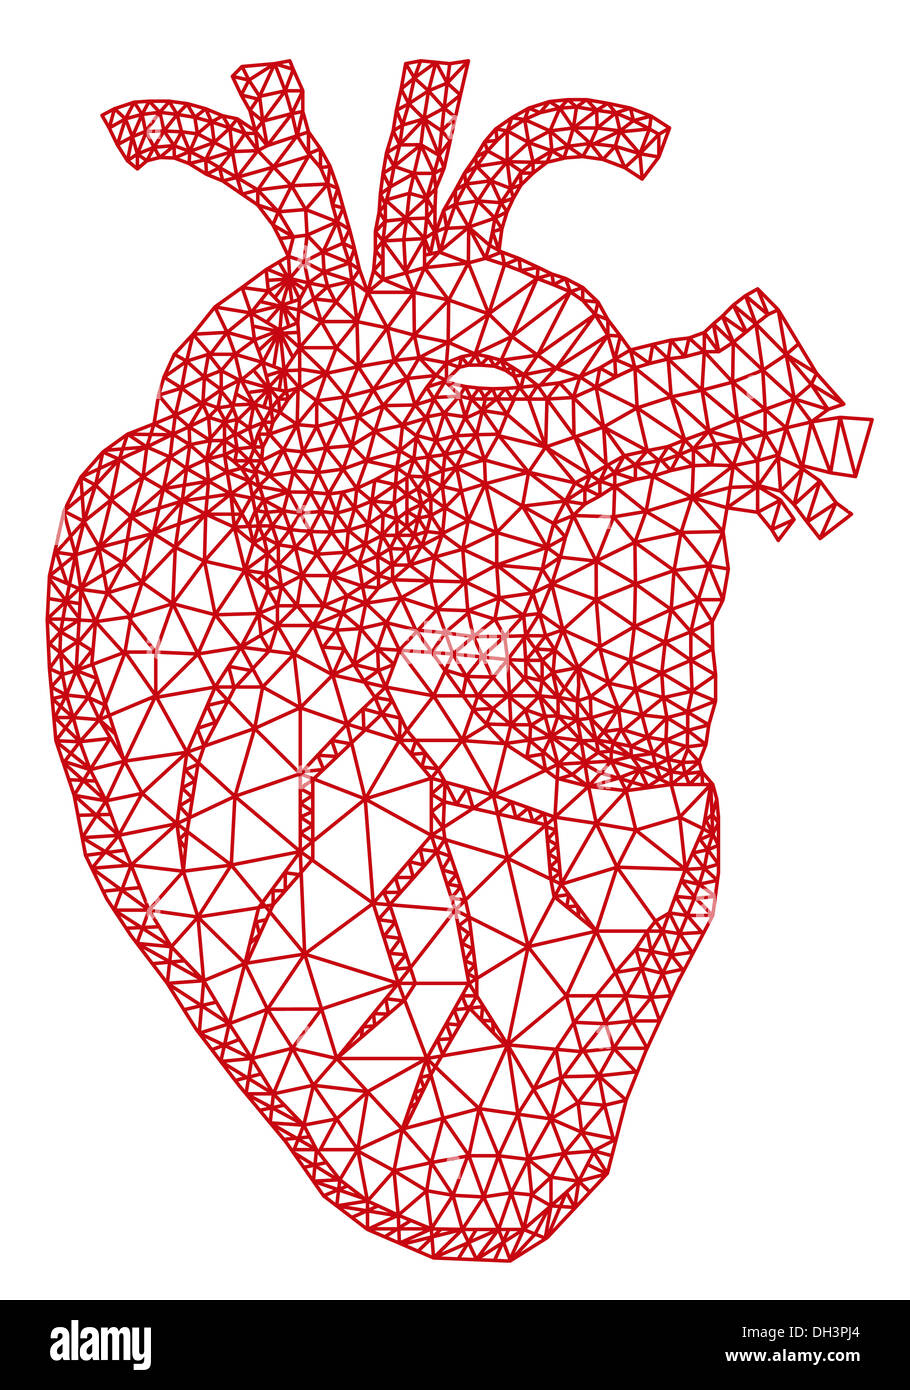 Rojo abstracto corazón humano con patrón de malla geométrica Foto de stock